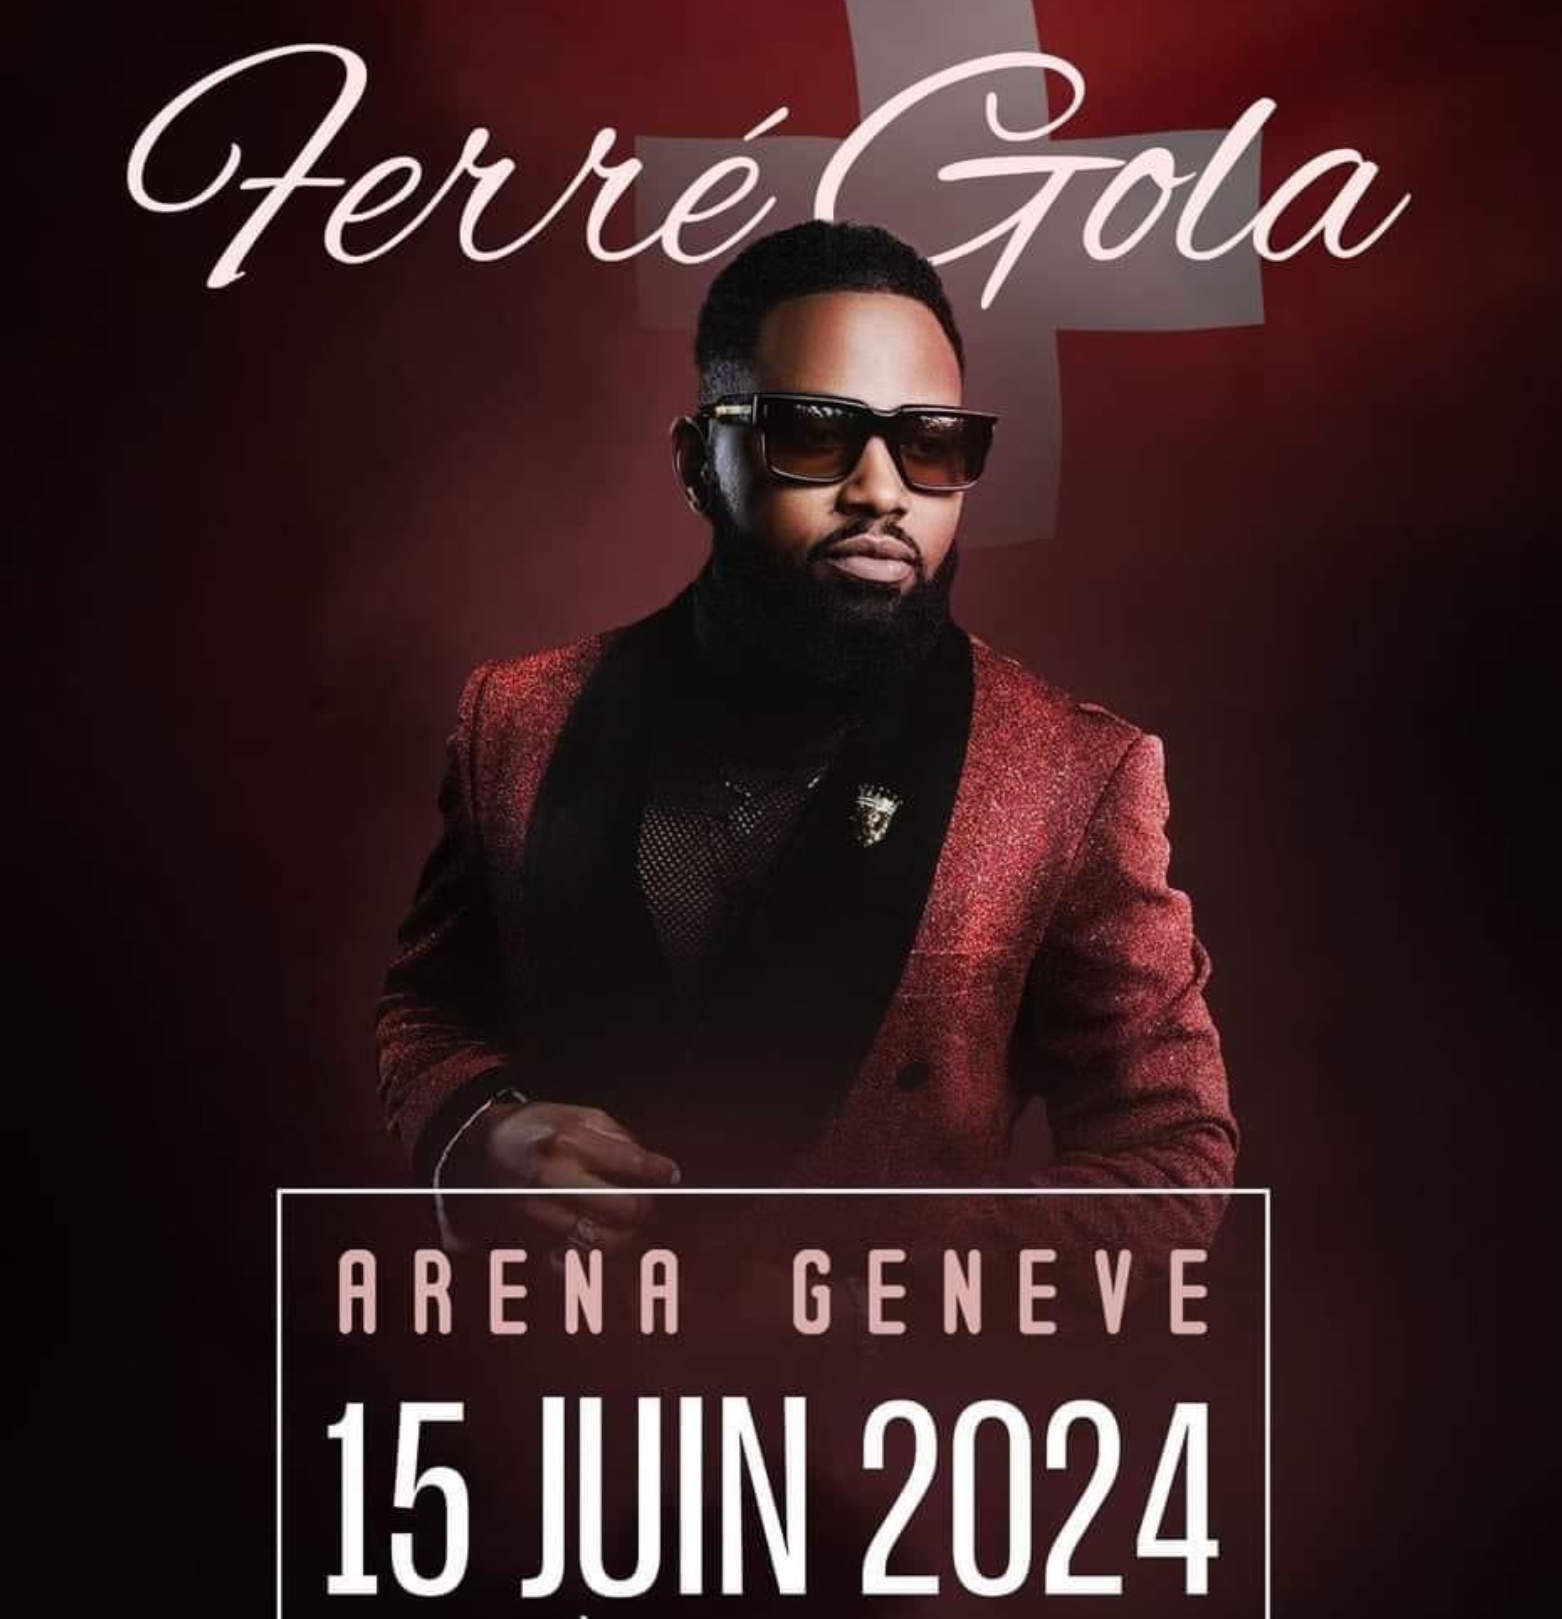 Ferre Gola at Geneva Arena Tickets